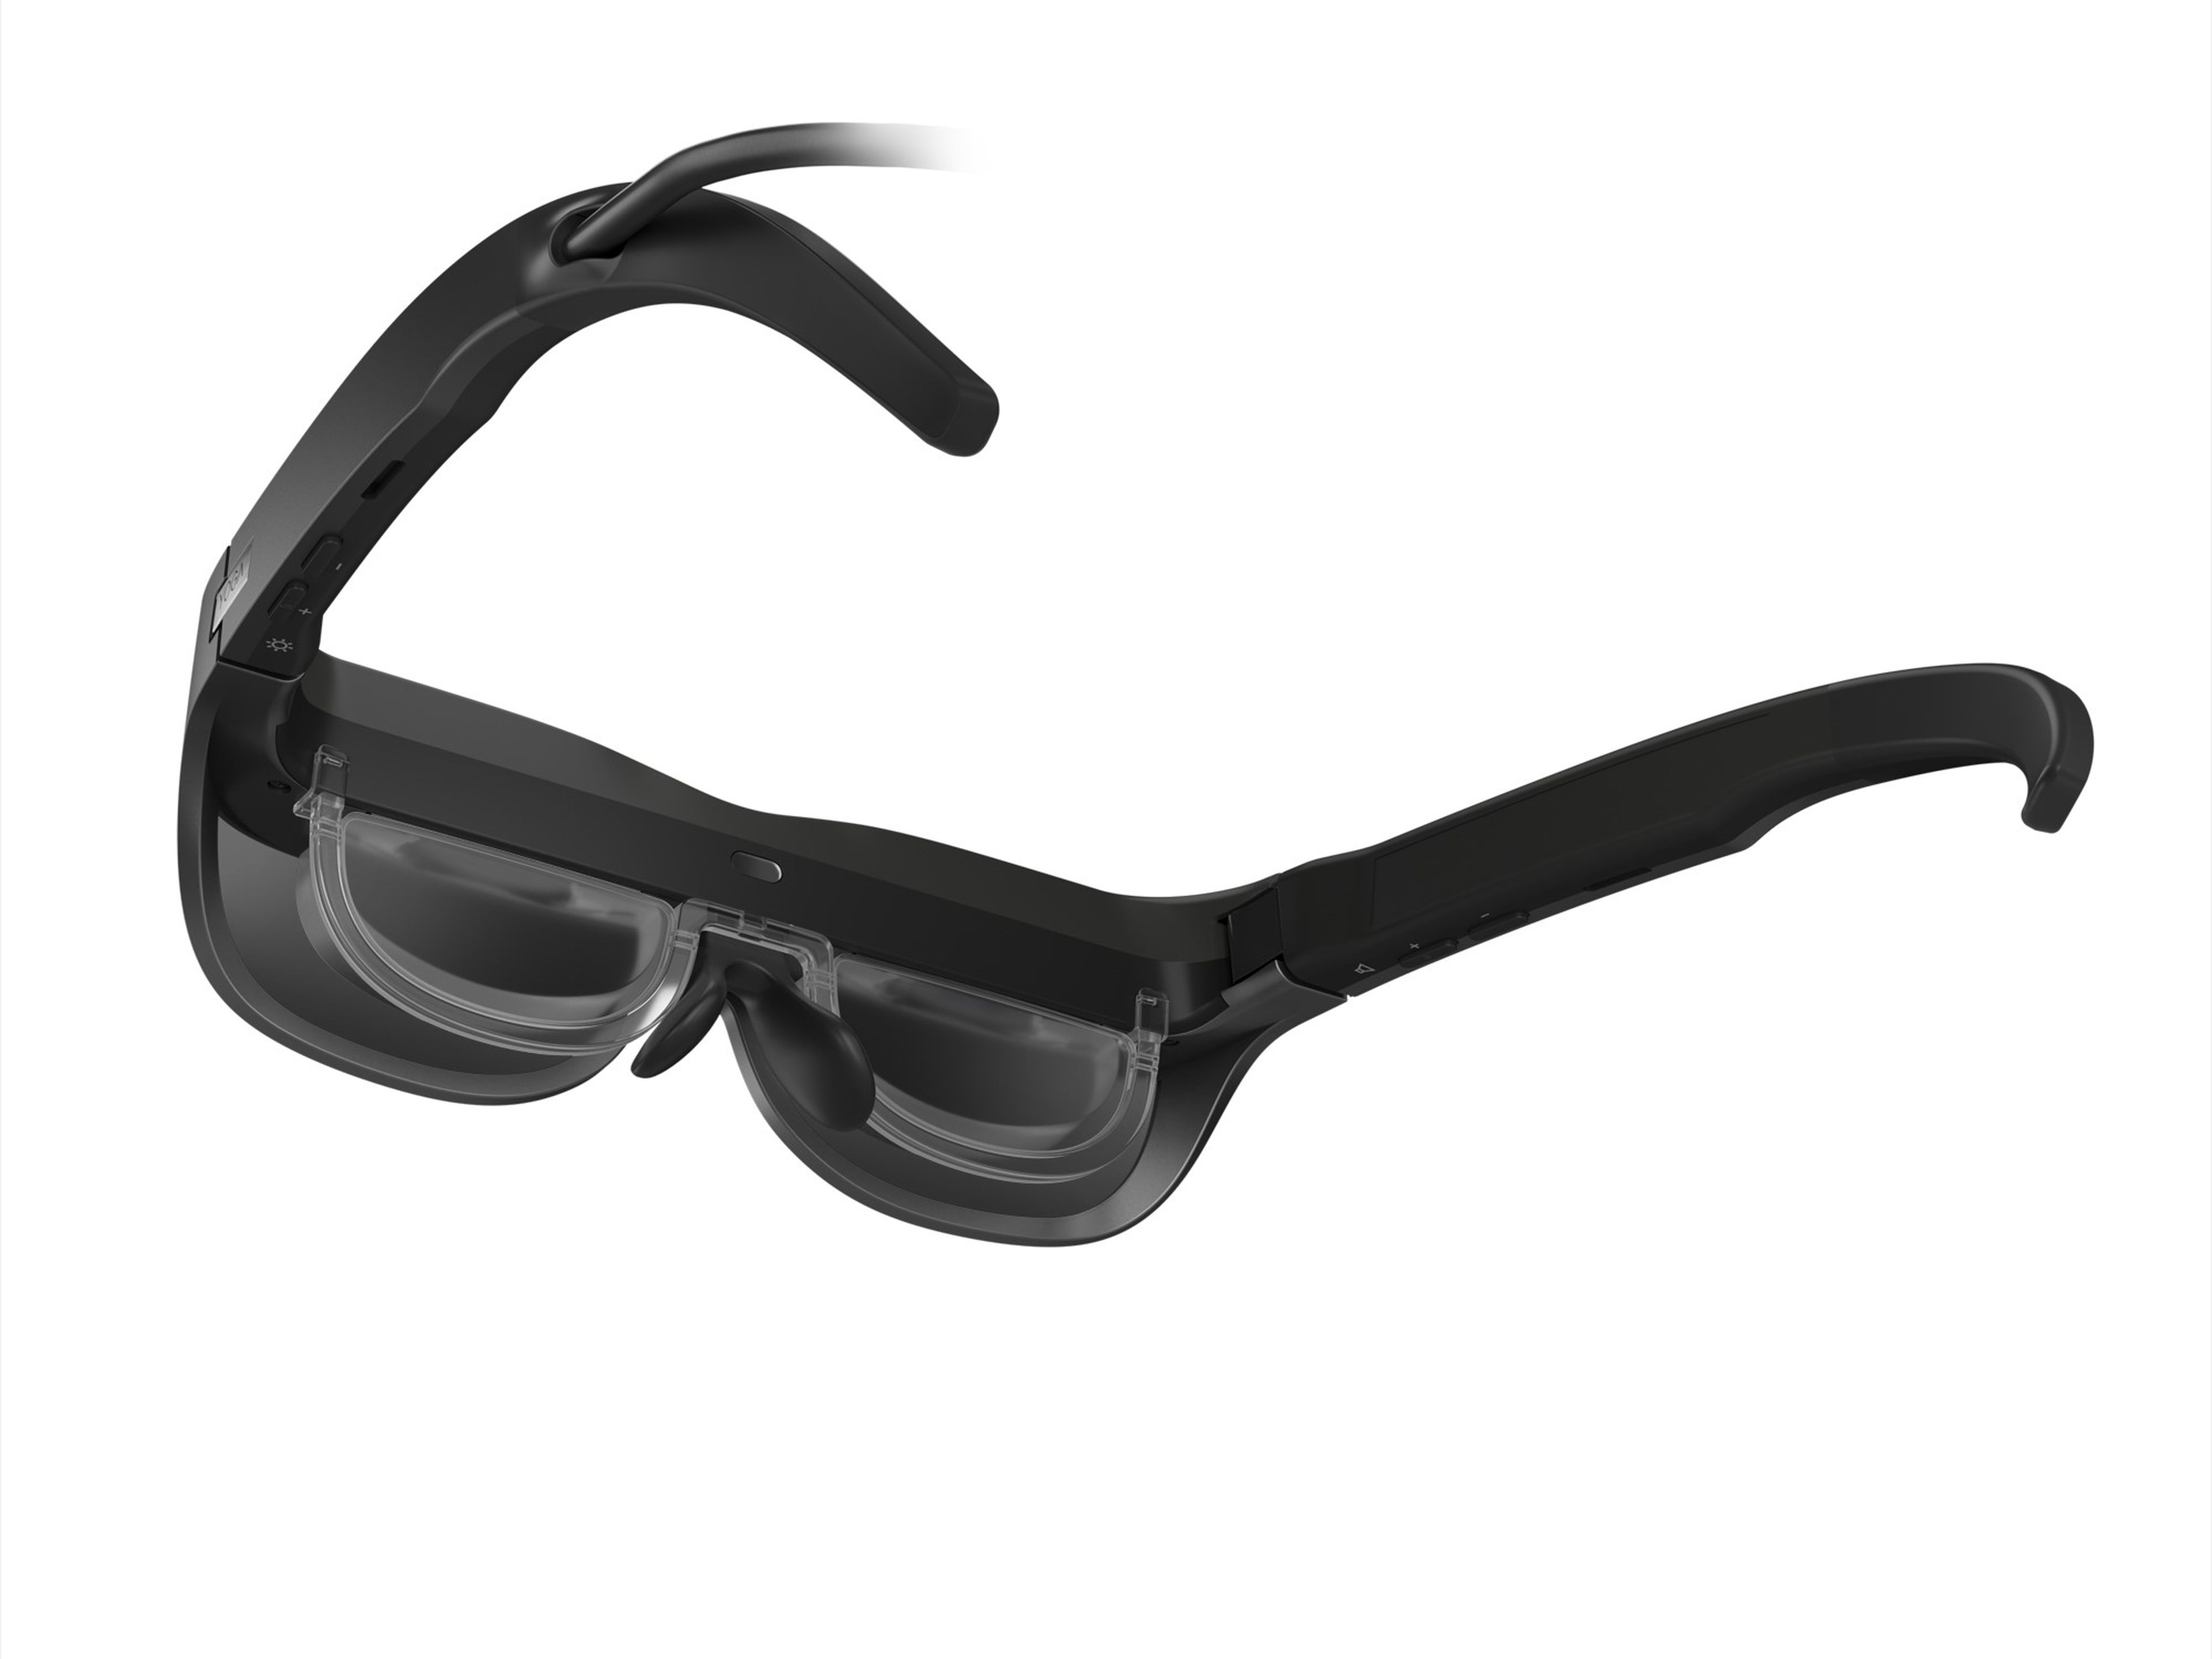 Lenovo Glasses T1 en detalle.